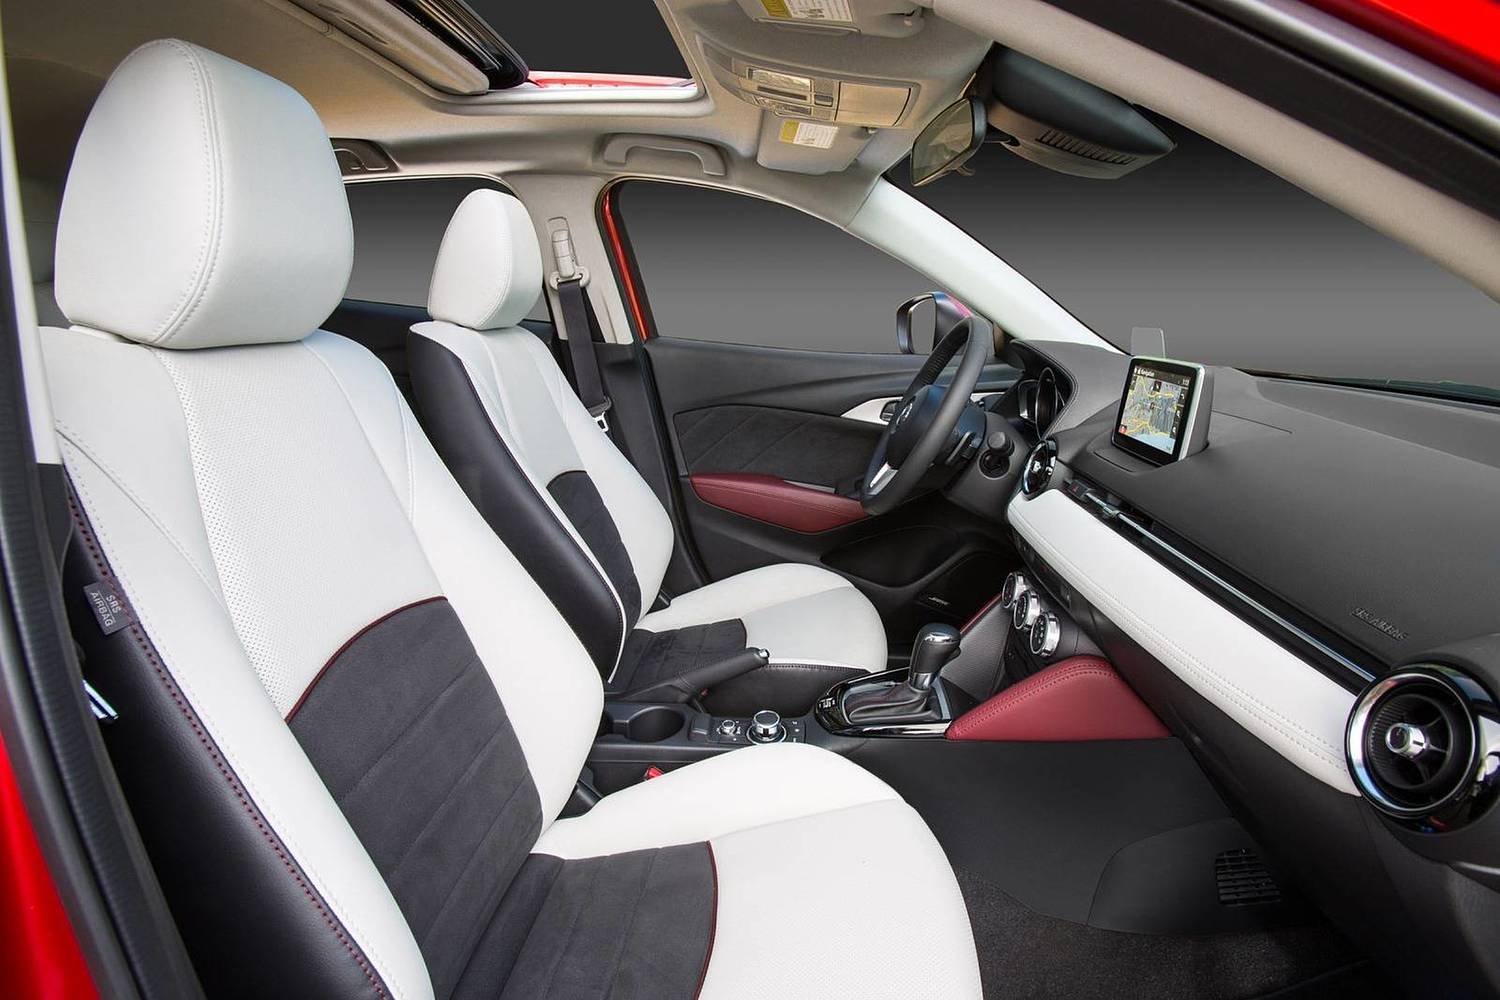 Mazda CX-3 Grand Touring 4dr SUV Interior Shown (2017 model year shown)